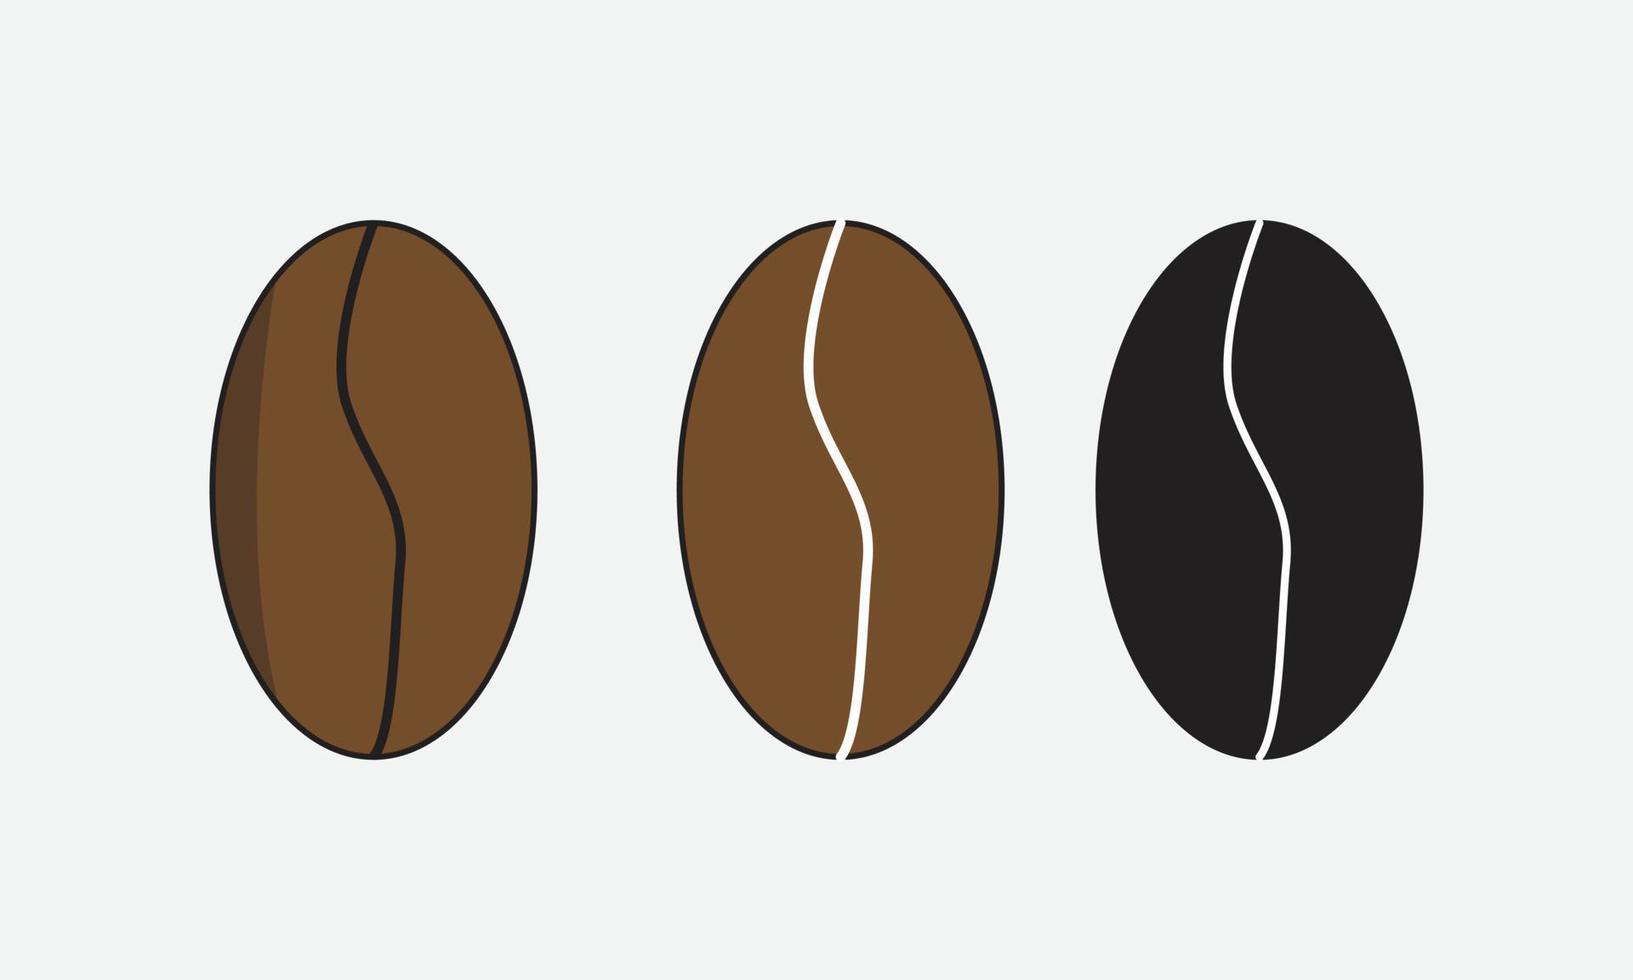 granos de café ilustración vectorial, granos de café negros marrones capuchino semillas naturales vector